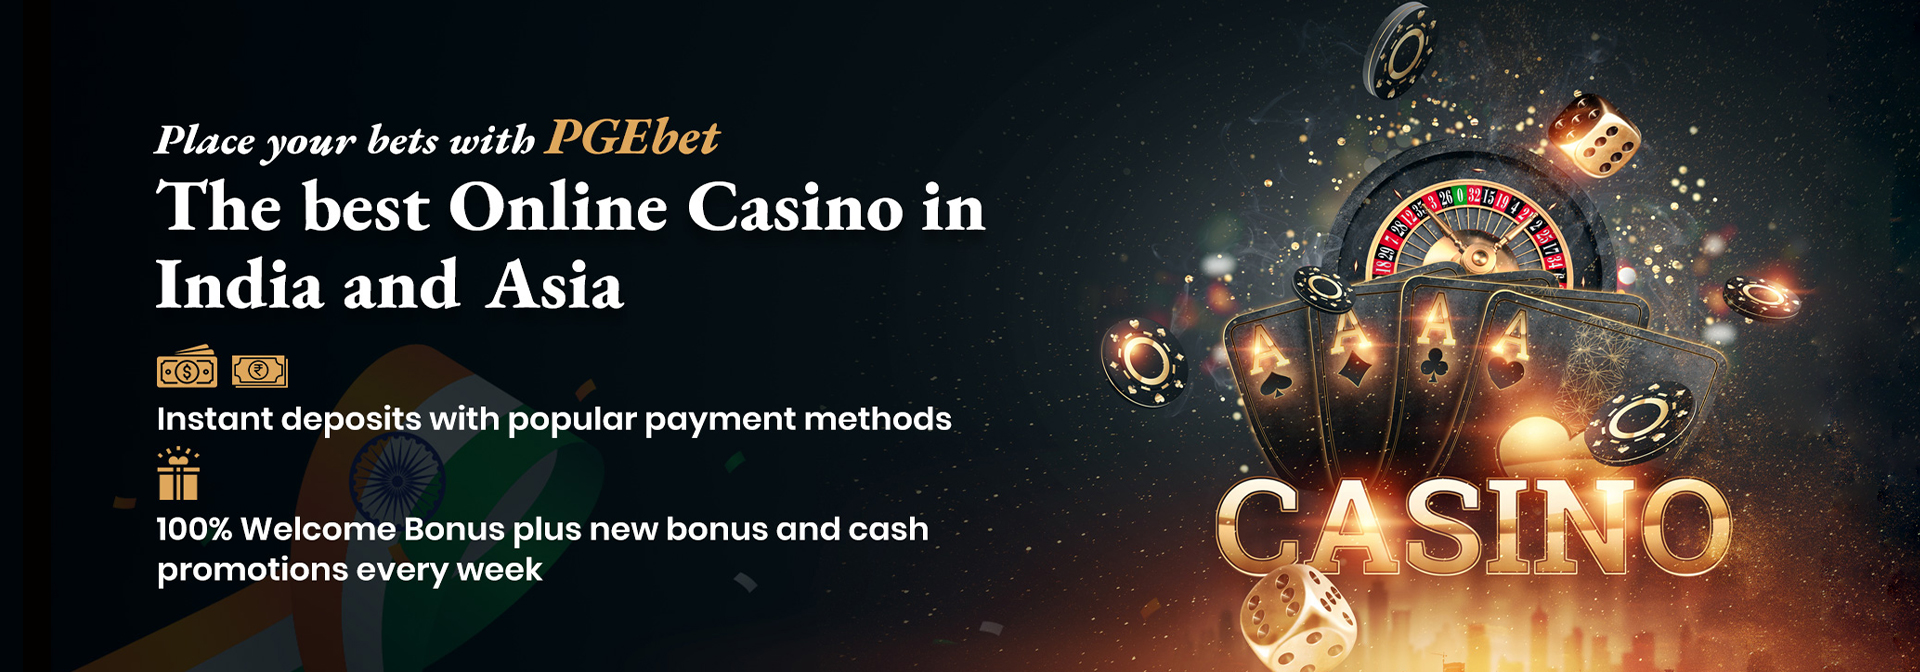 Online Casino India App Download